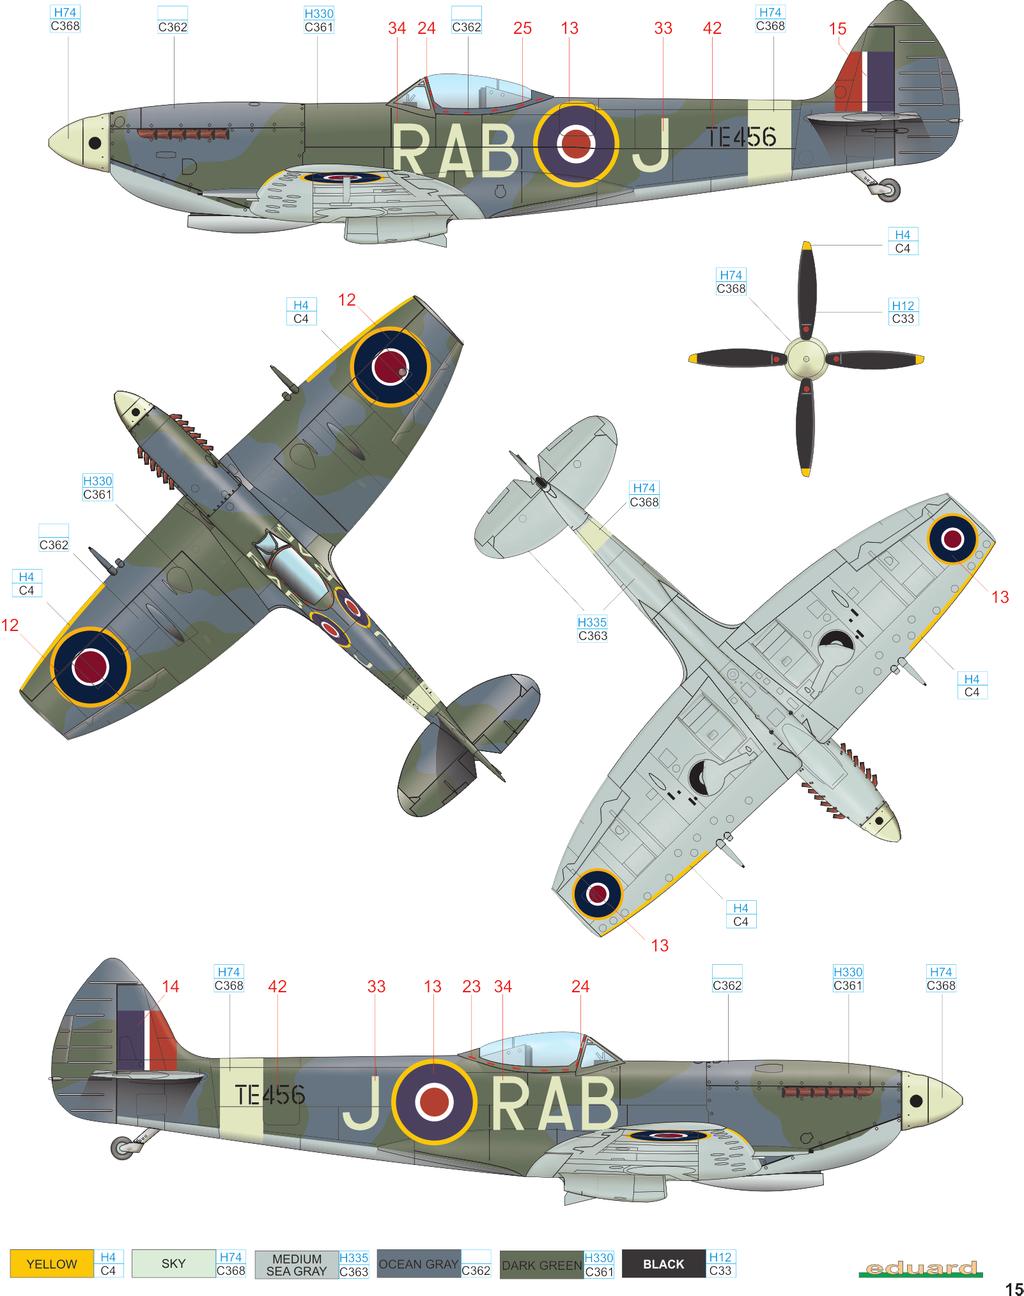 E TE456, 501. squadrona RAuxAF, základna Filton, 1949 501. squadrona během bojů 2. světové války sestřelila 201 nepřátelských letadel a více než 84 létajících bomb V-1. Byla rozpuštěna 20.